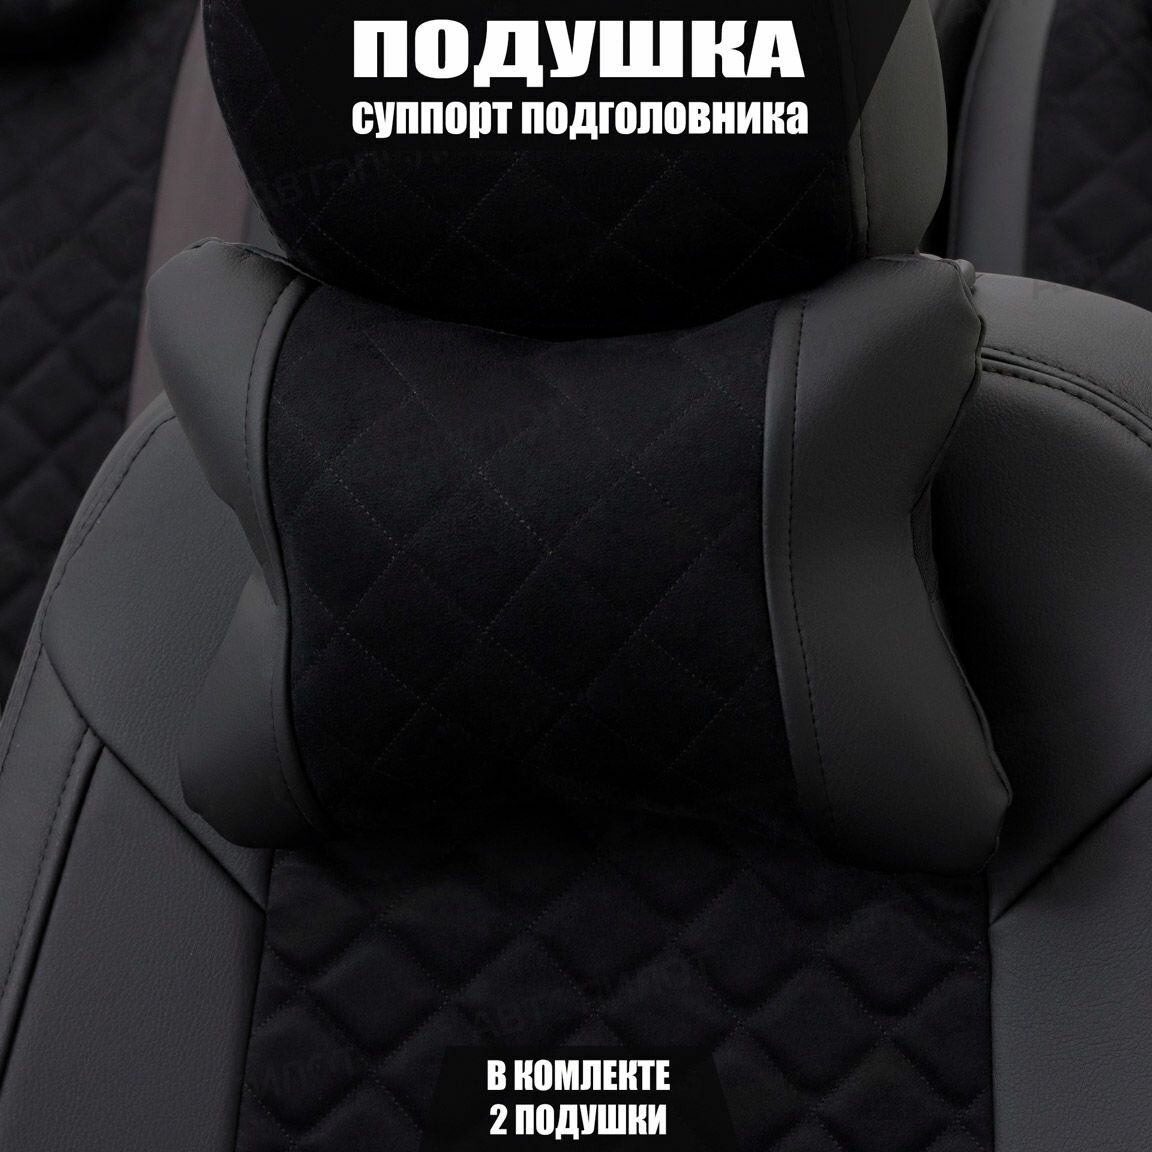 Подушки под шею (суппорт подголовника) для Хендай Элантра (2015 - 2019) седан / Hyundai Elantra Ромб Алькантара 2 подушки Черный и бежевый